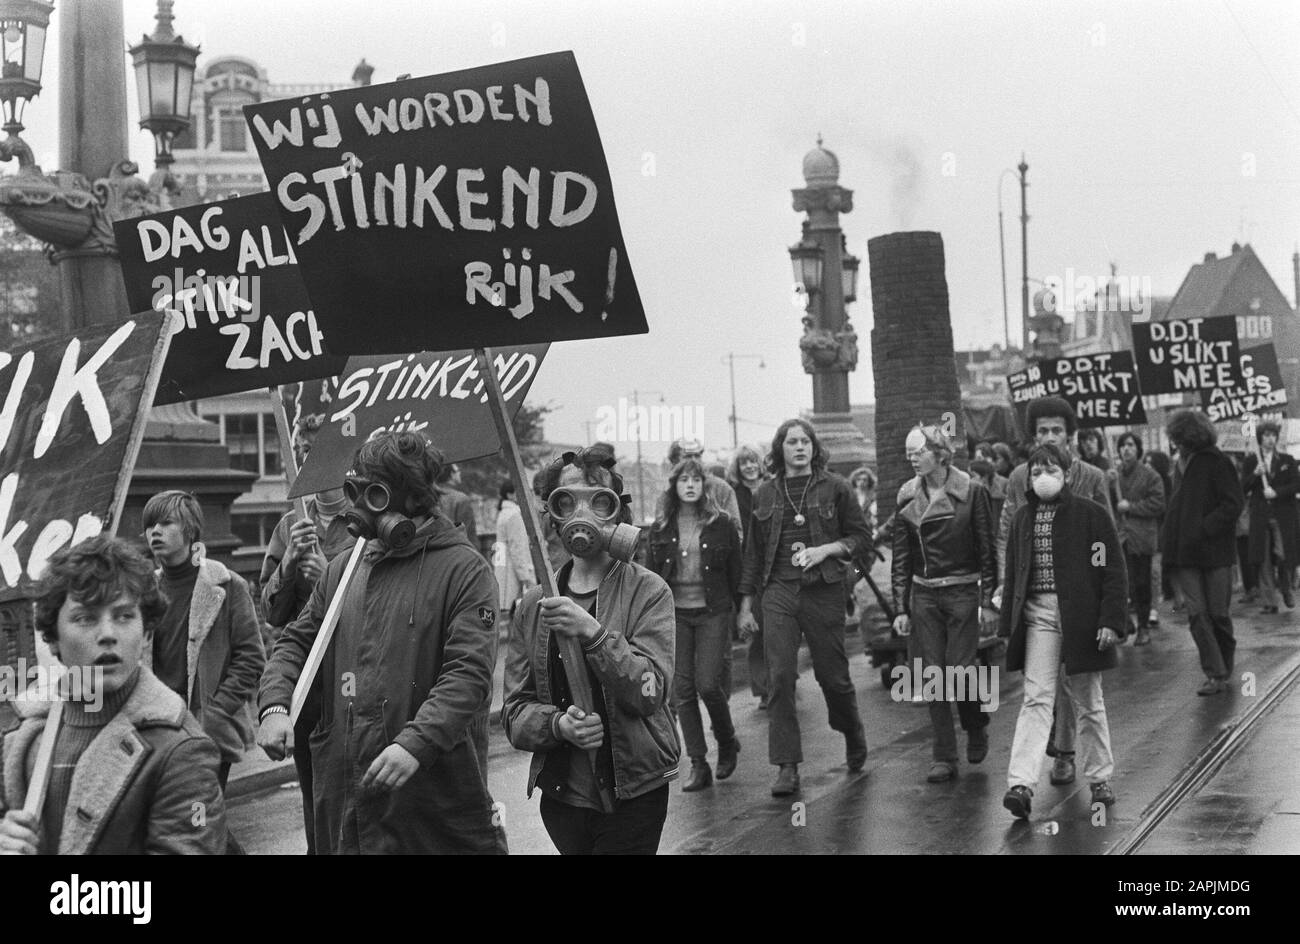 Demonstration gegen Luftverschmutzung durch Action Strohalm in Amsterdam; Demonstranten mit Gasmasken Datum: 24. Oktober 1970 Ort: Amsterdam, Noord-Holland Schlüsselwörter: Gasmasken, Demonstranten, Demonstrationen Stockfoto